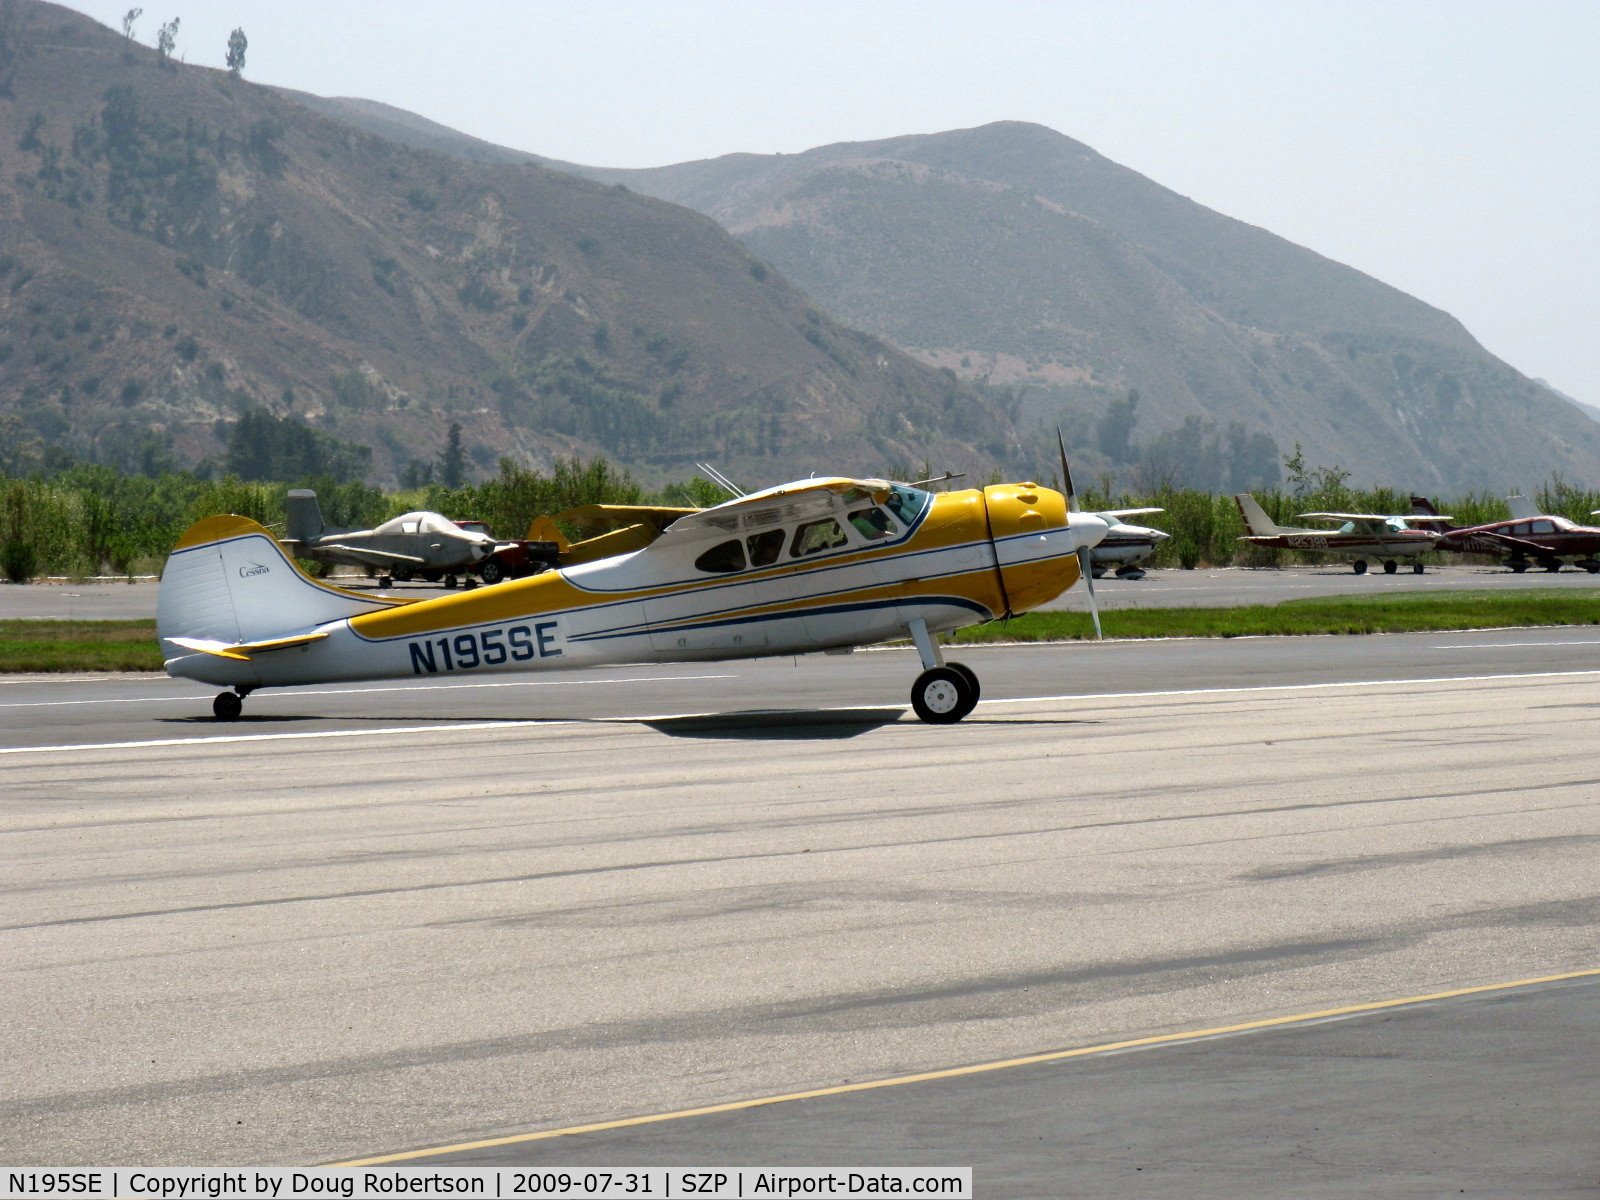 N195SE, 1951 Cessna 195 (U-20A) C/N 7857, Cessna 195 BUSINESSLINER, Jacobs R-755 300 Hp, taxi turn